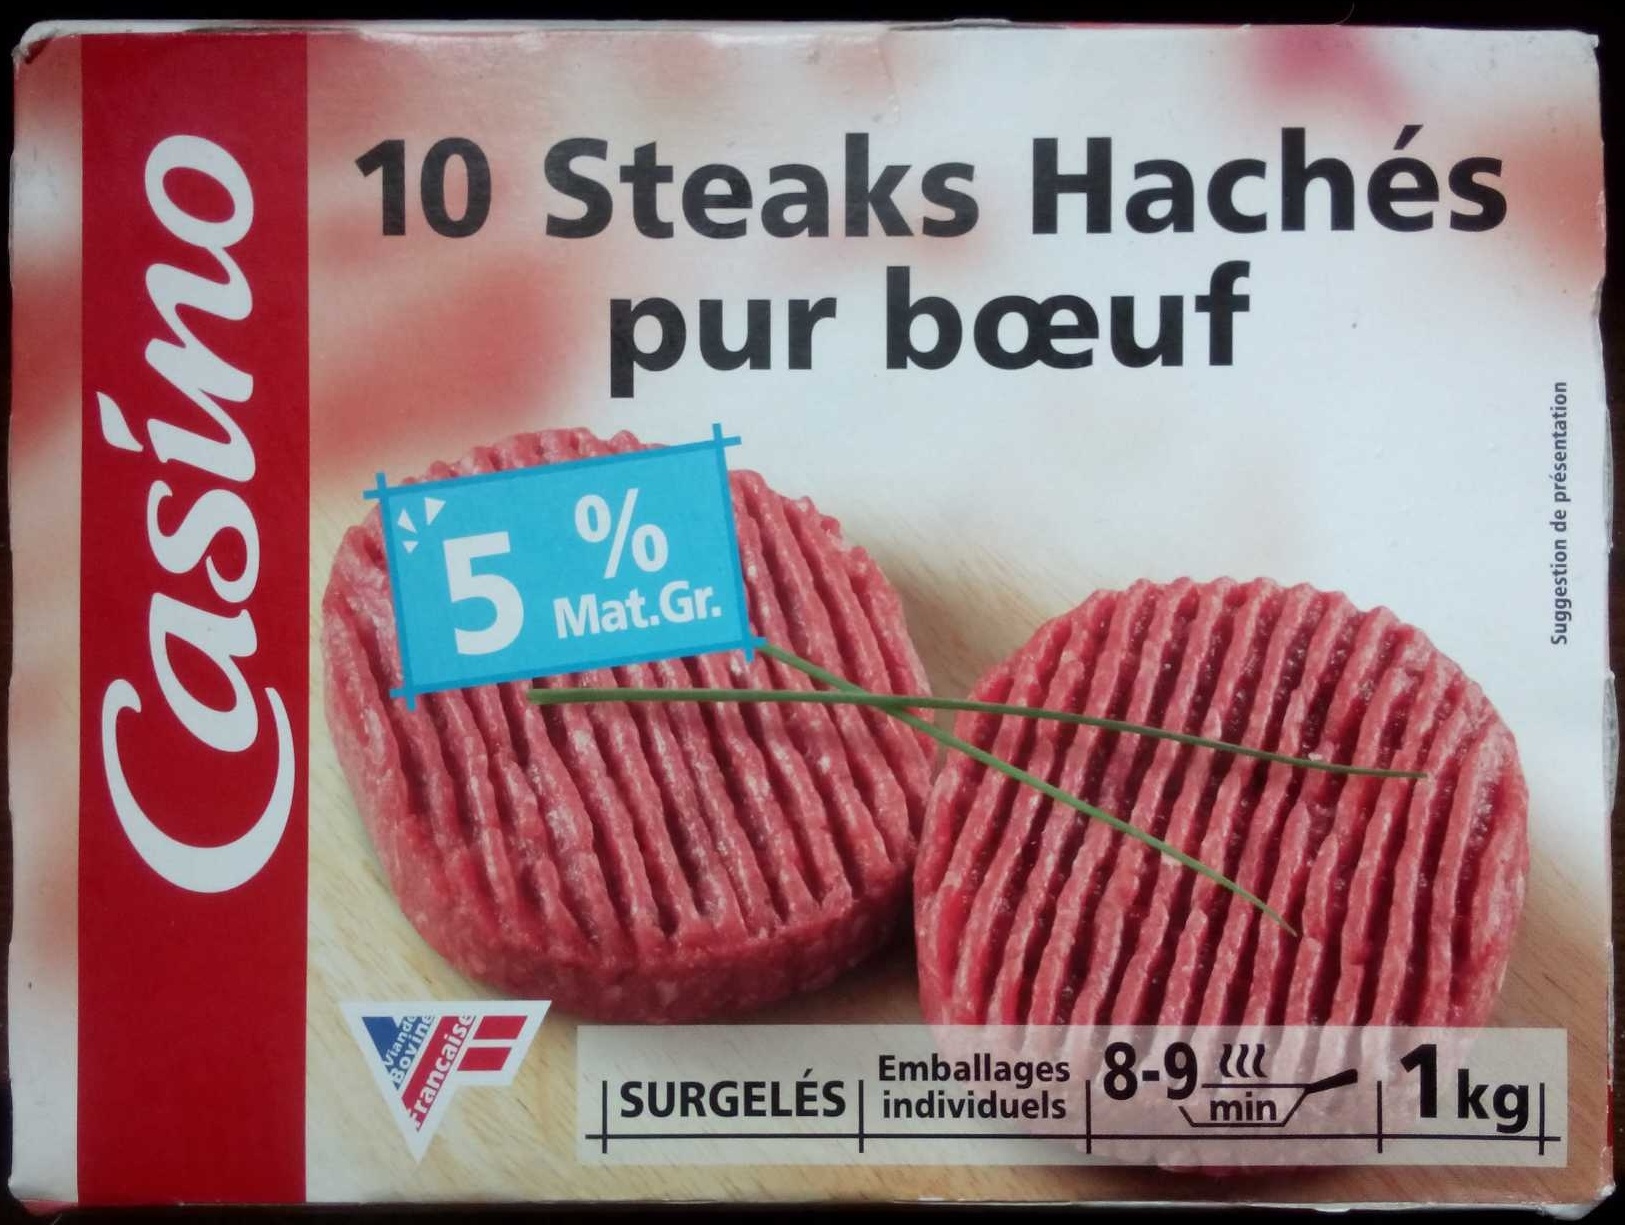 10 Steaks hachés Pur boeuf - 5% Mat. Gr. - Product - fr